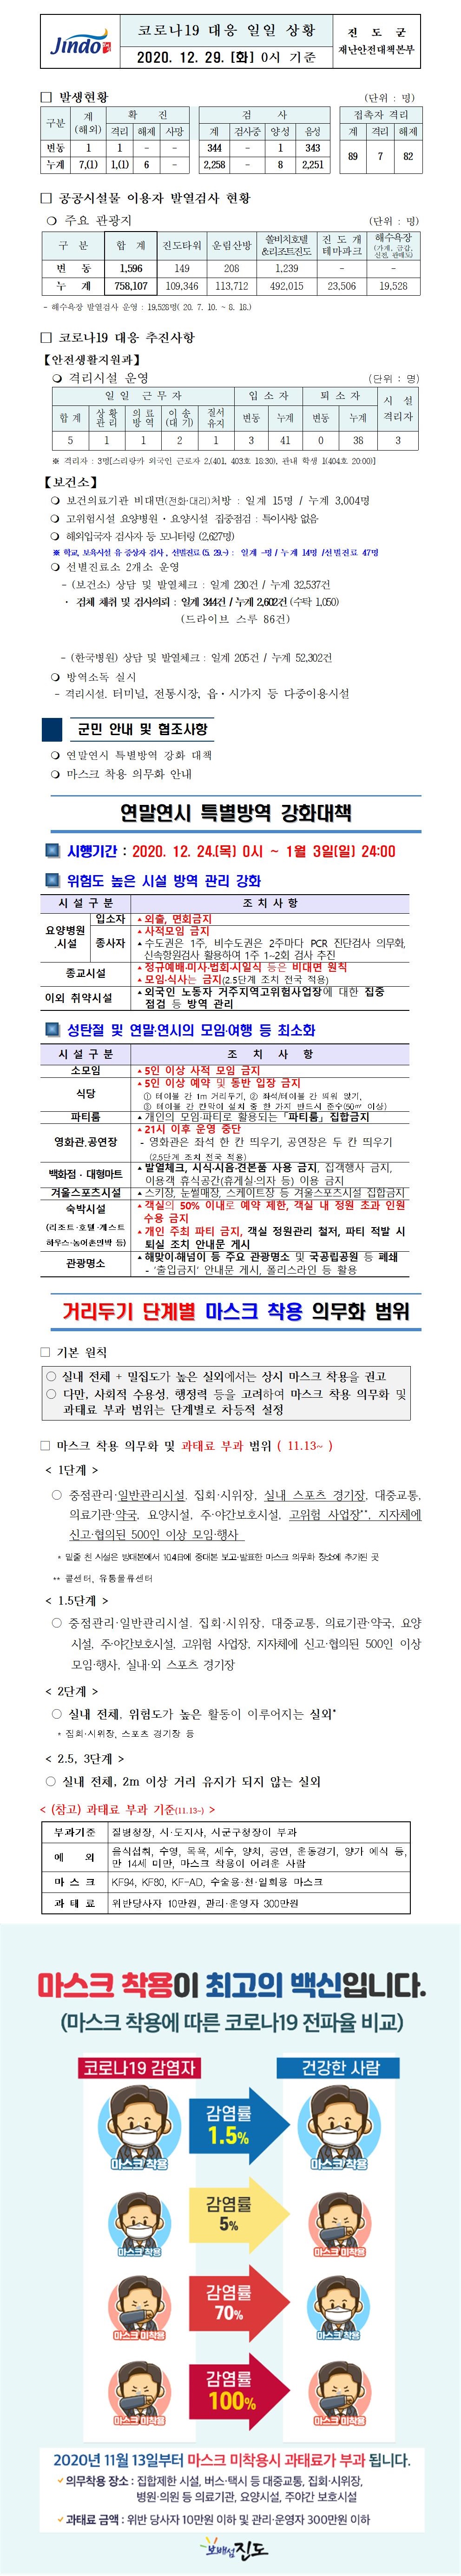 코로나19대응 일일 상황 보고(12월29일 0시 기준) 첨부#1